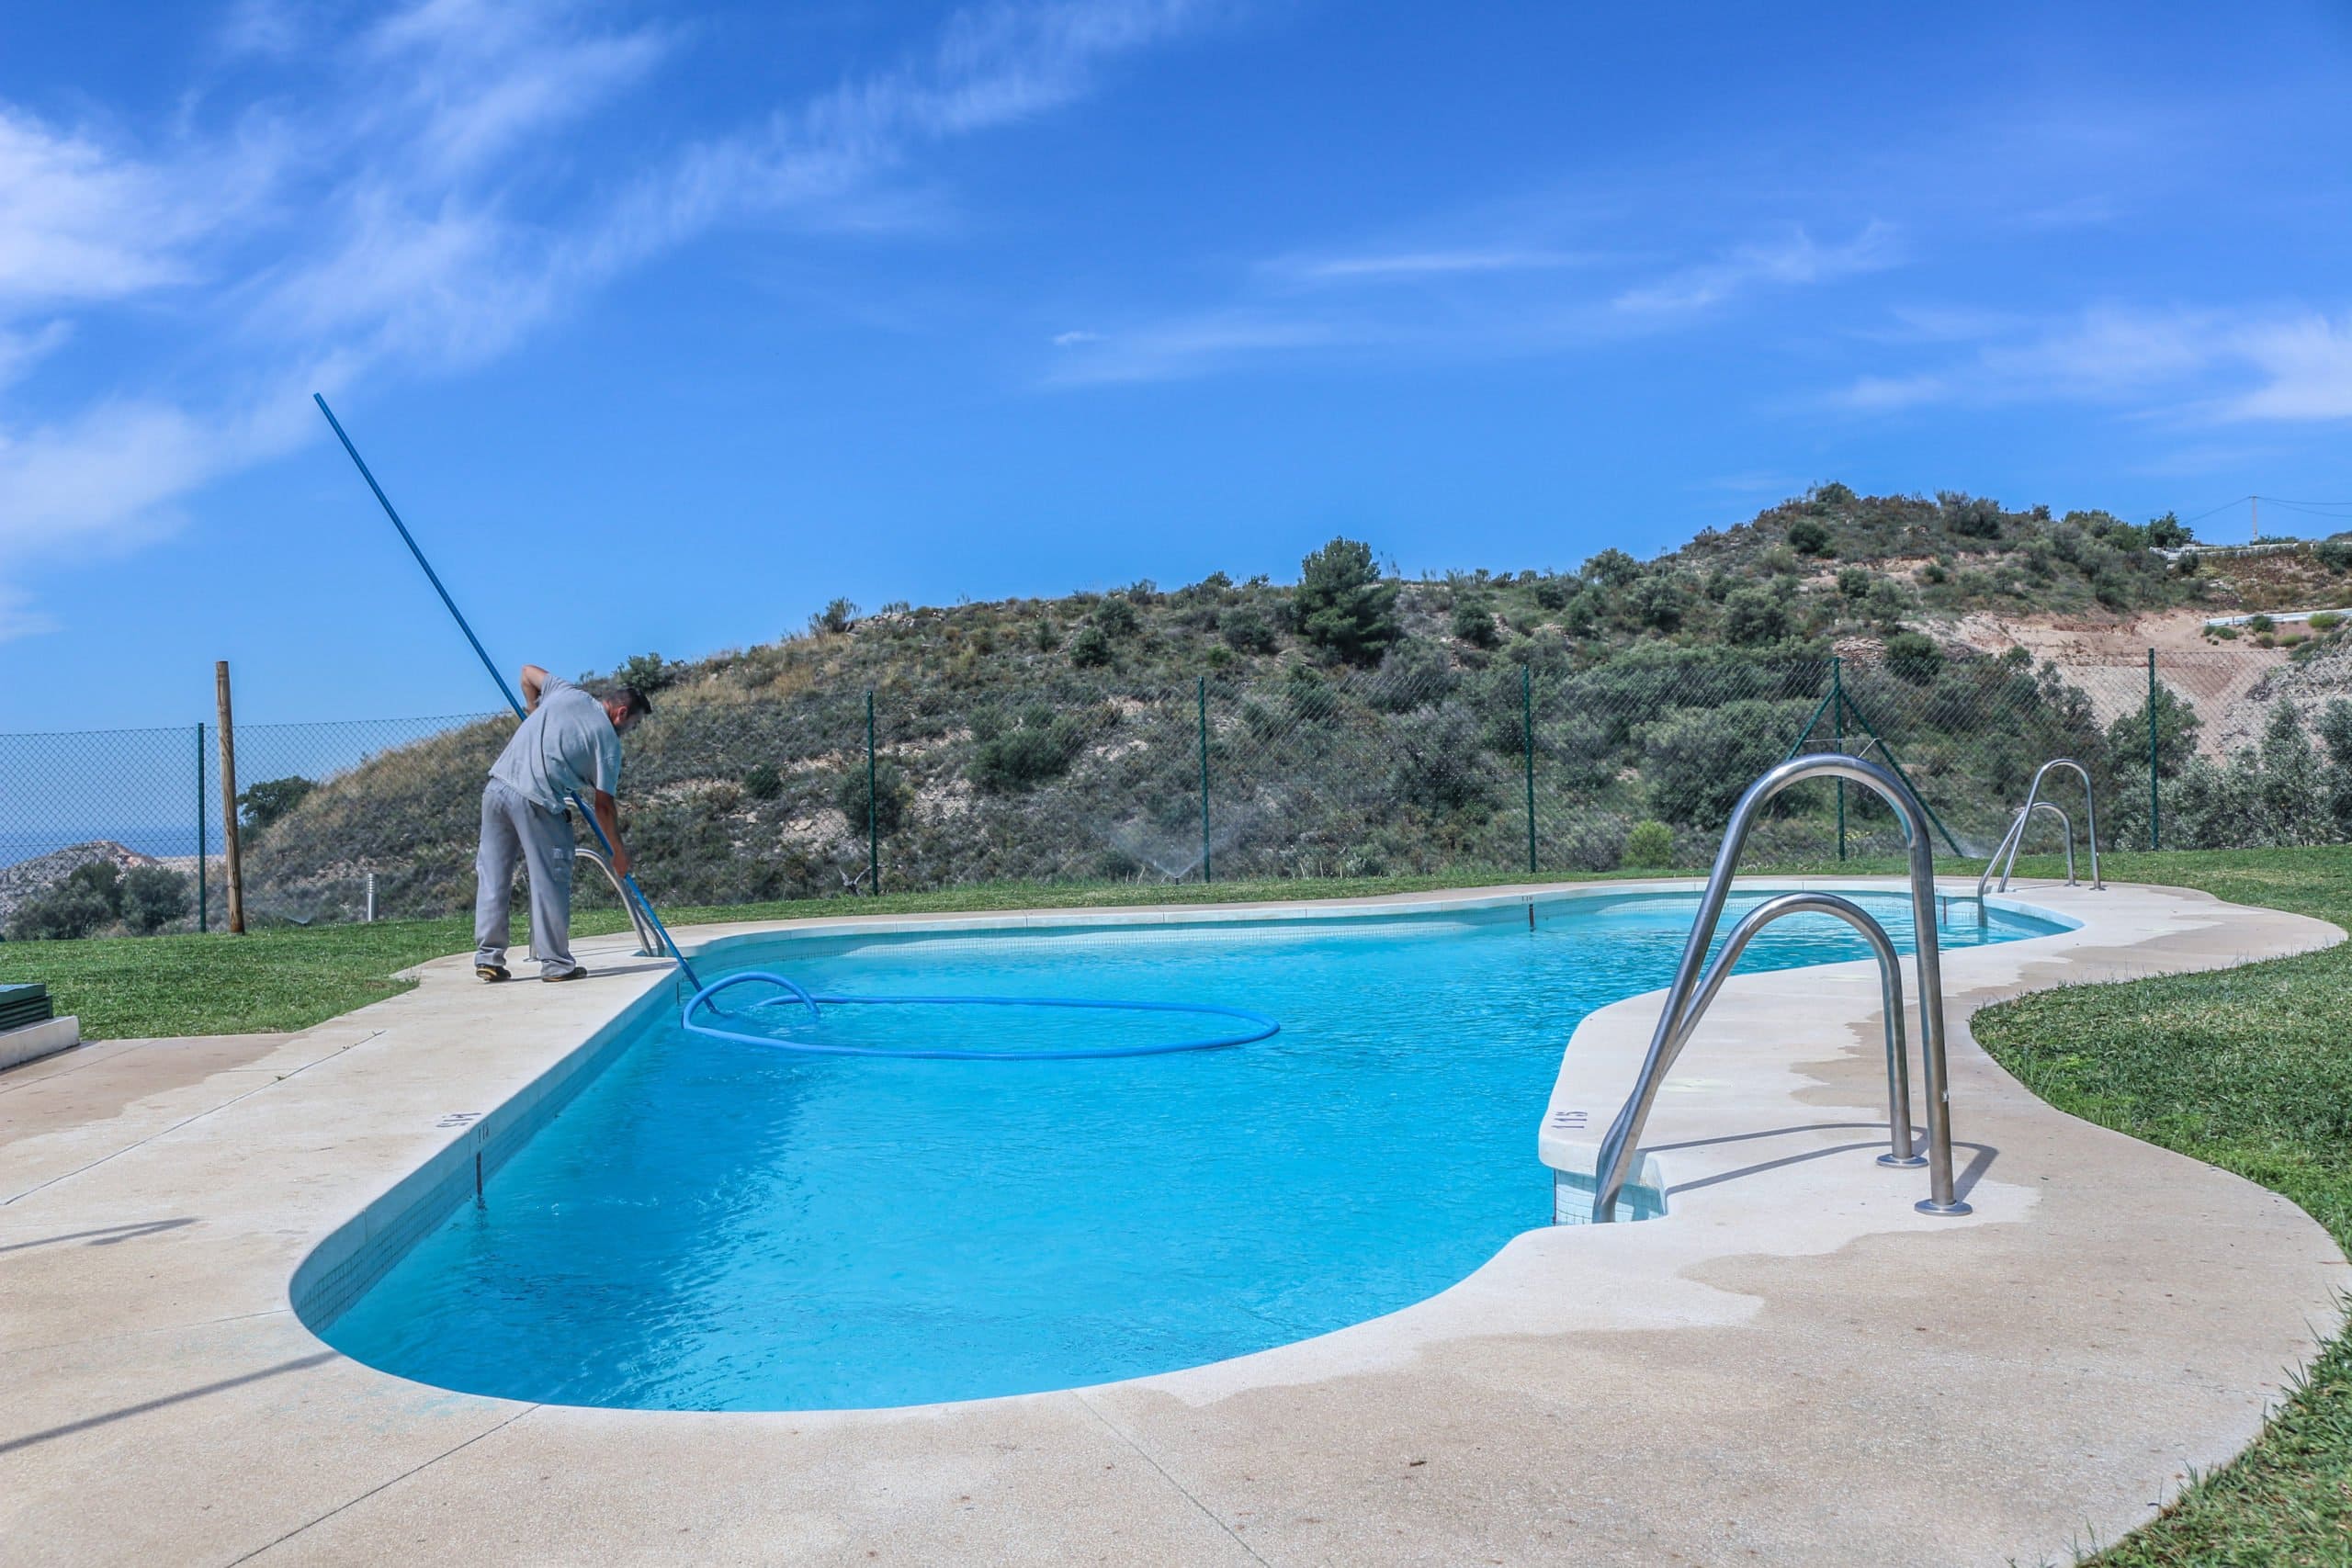 Cómo limpiar el fondo de una piscina desmontable Claves y trucos  La  Gaceta de Salamanca